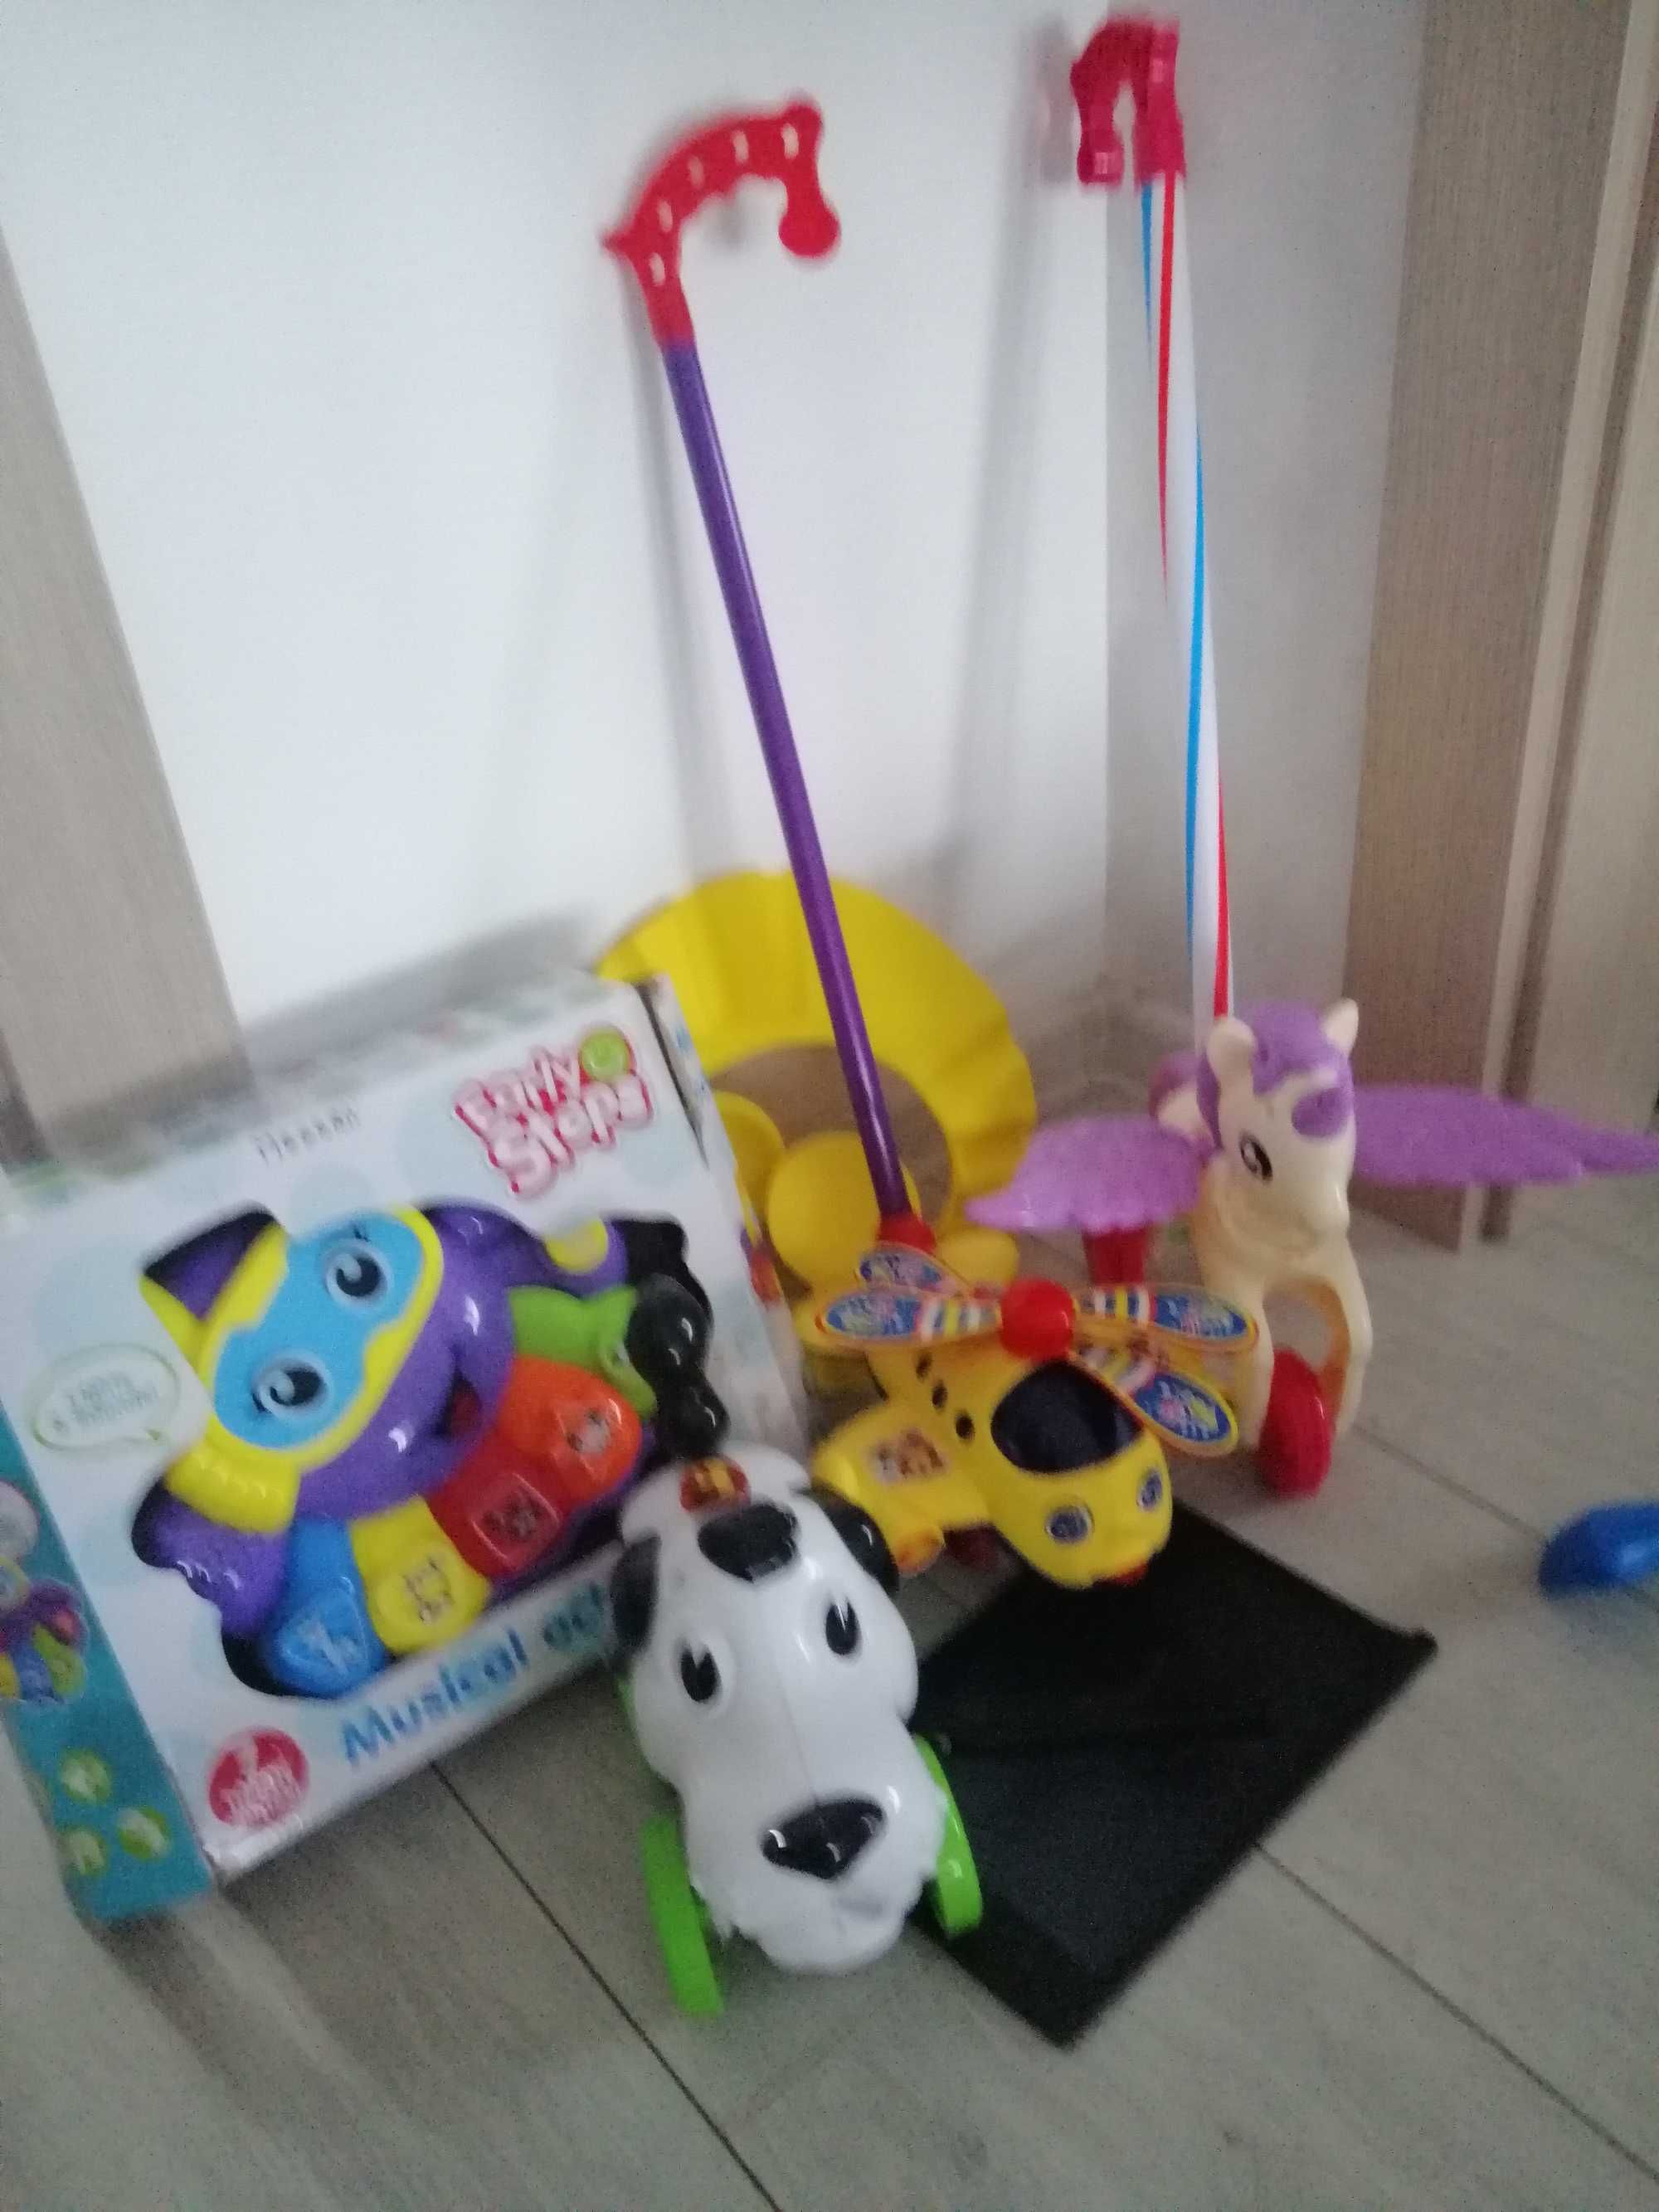 Lot jucării interactive, copil  1-3ani bakugani, masinute